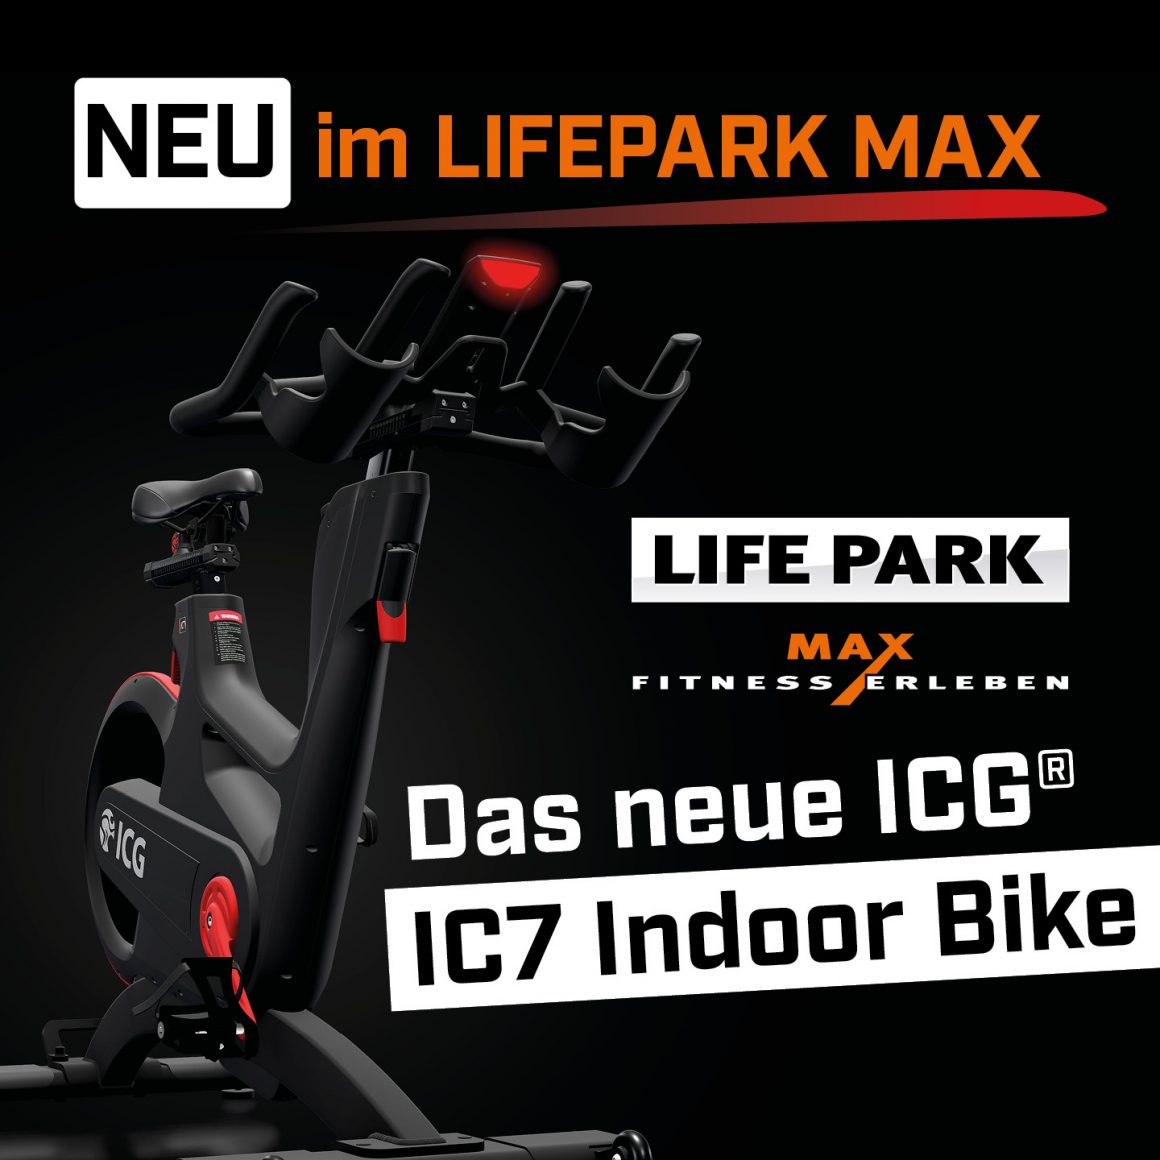 Das neue ICG®  IC7 Indoor Cycle — ab 23. Februar im LIFEPARK MAX